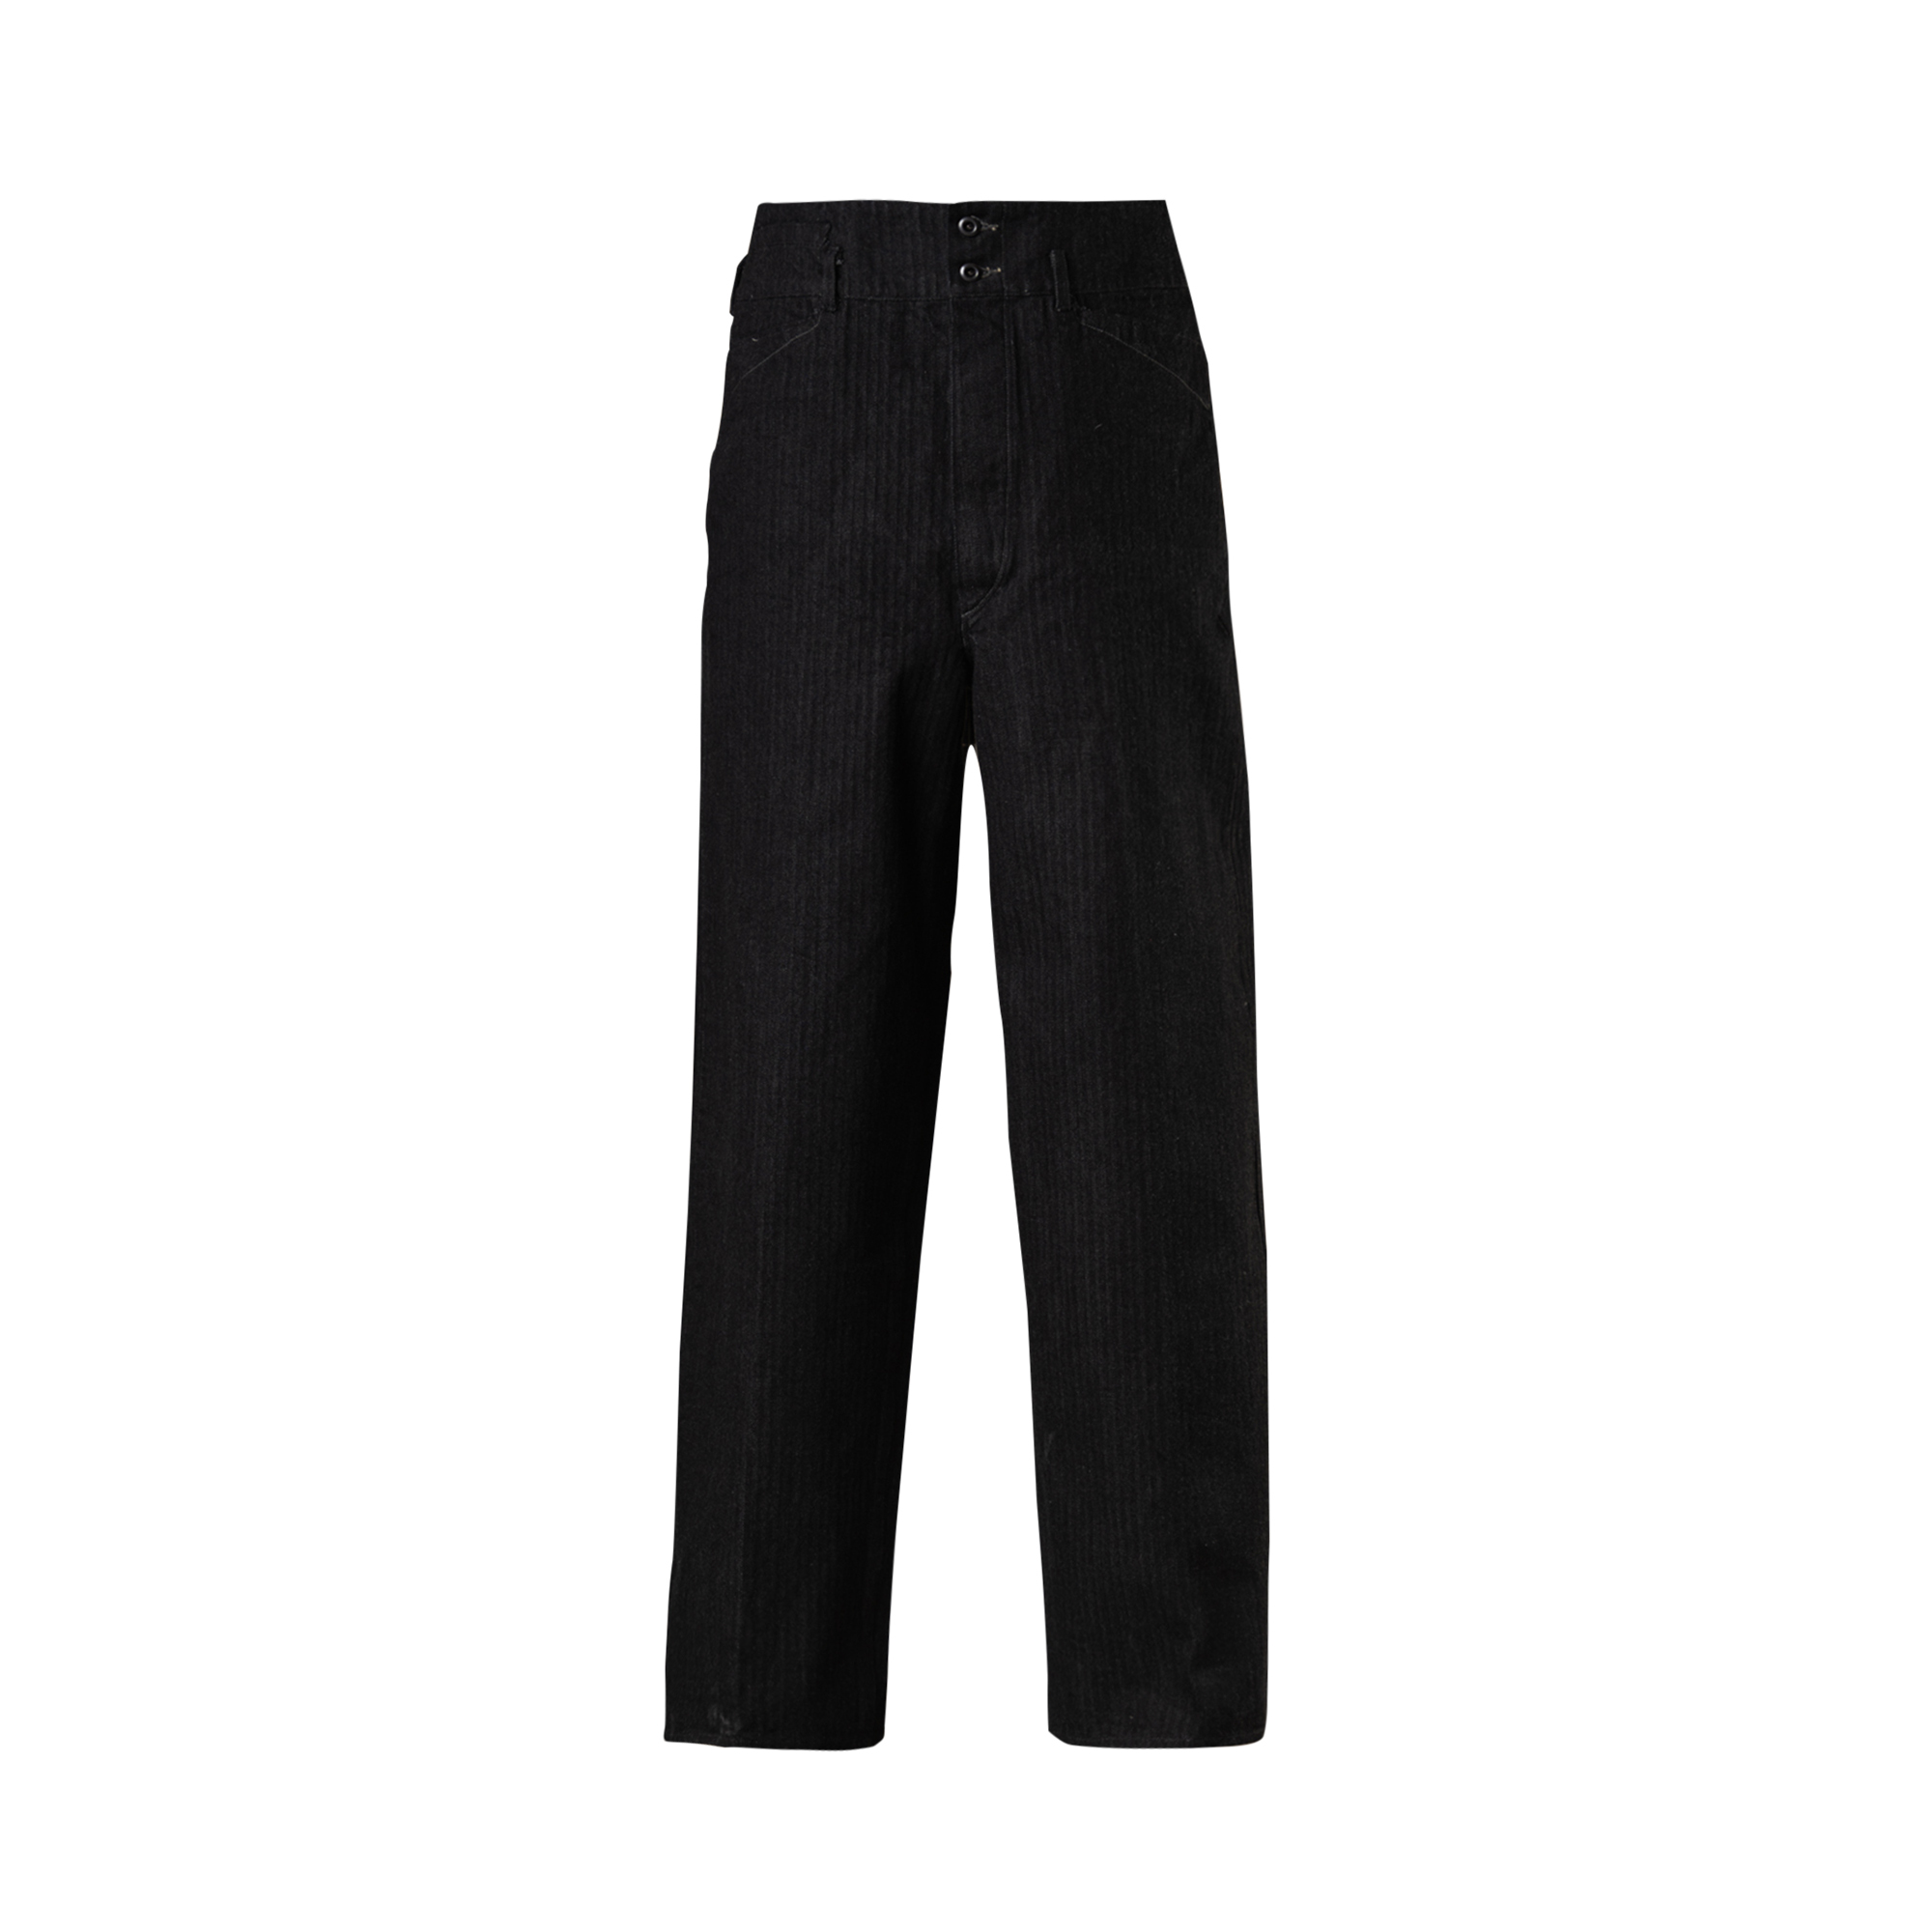 MotivMfg - Wide Waistband Denim Trousers (Black)